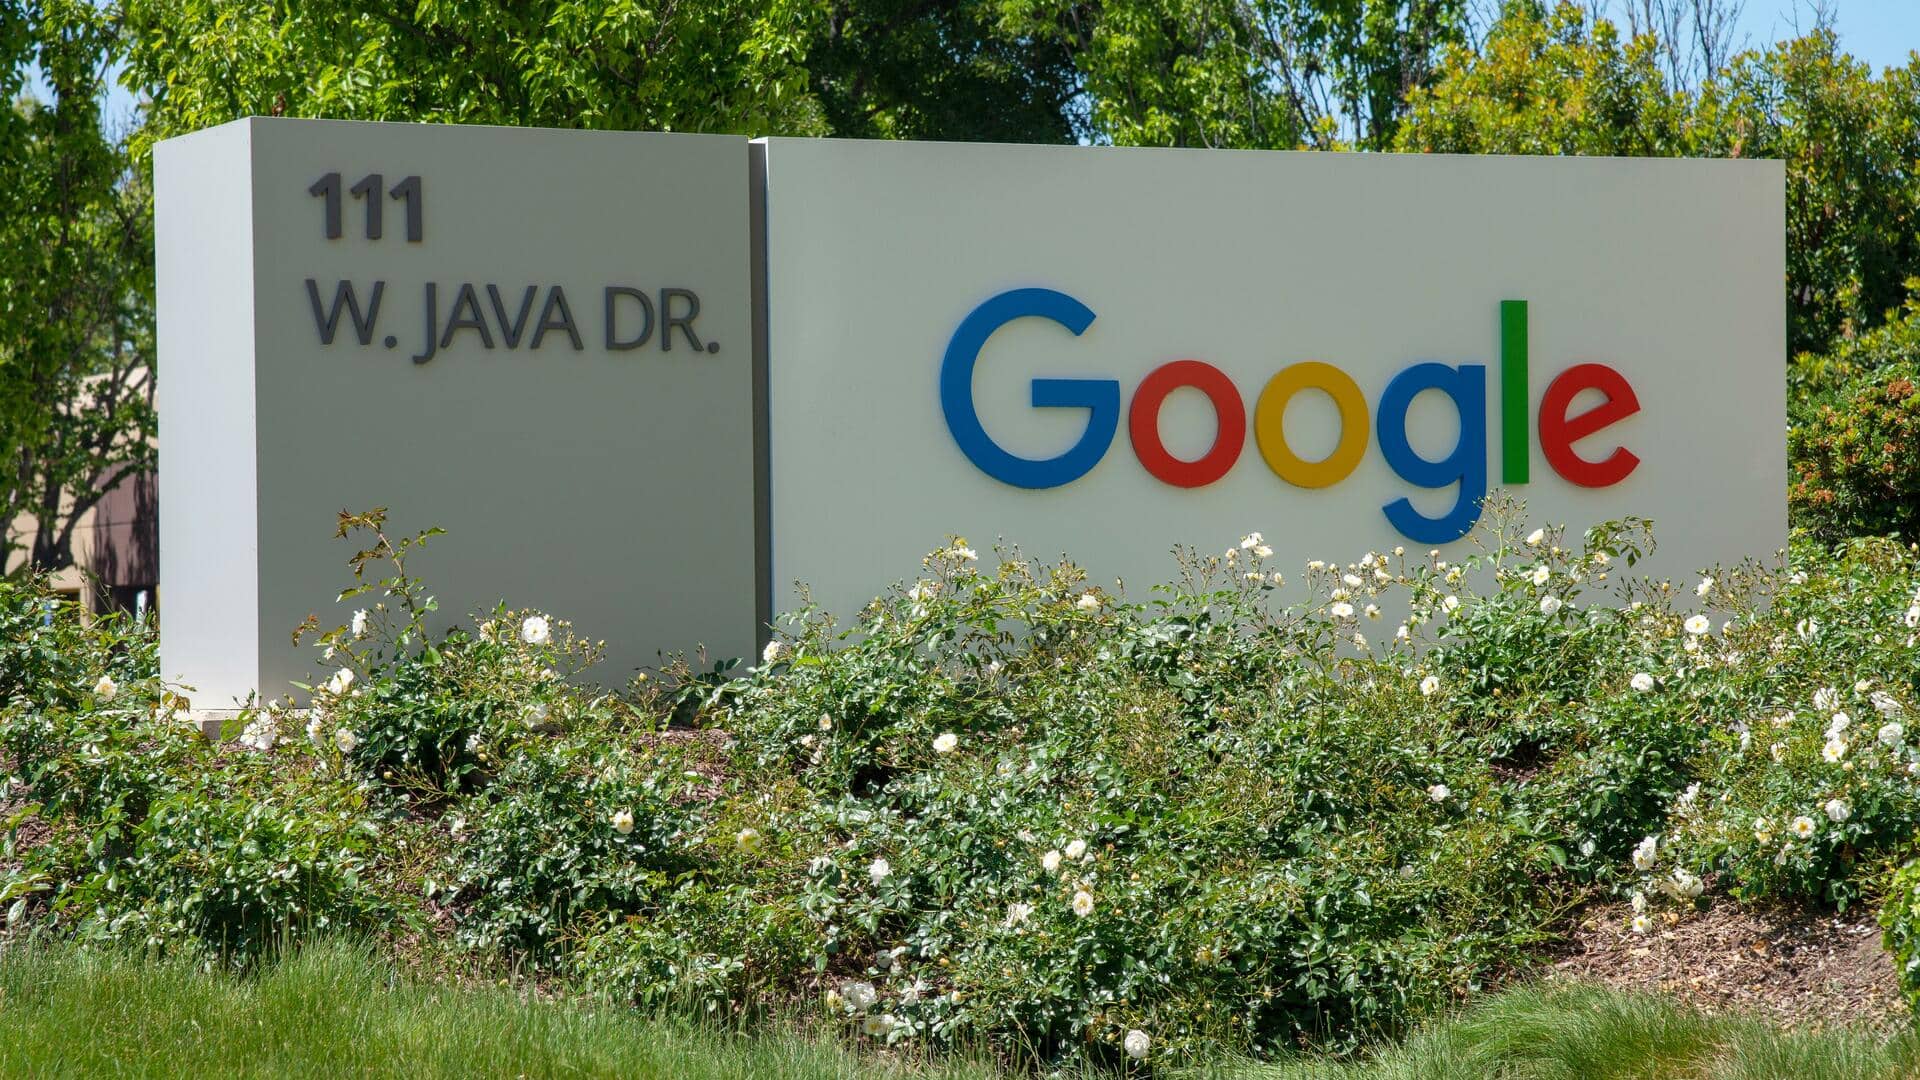 गूगल अपने कर्मचारियों को नहीं देगी मुफ्त स्नैक्स और अन्य सेवाएं, खर्च में कटौती है लक्ष्य